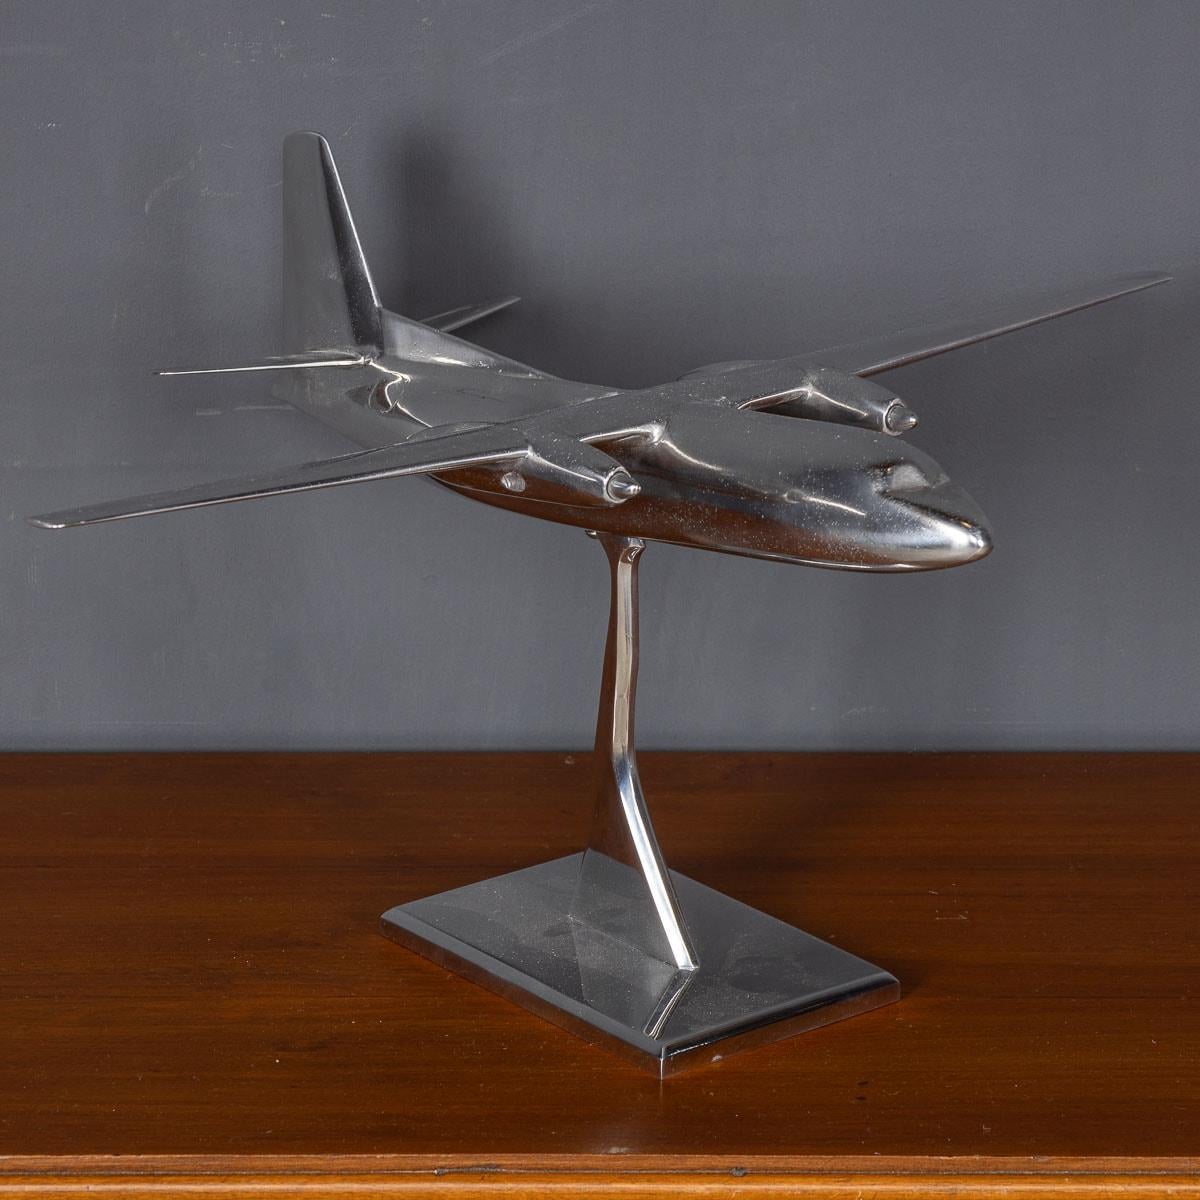 Ein exquisites Modell eines kleinen Passagierflugzeugs aus dem 20. Jahrhundert, fachmännisch aus Aluminium gefertigt und auf einem passenden Aluminiumsockel präsentiert. Dieses bemerkenswerte Stück ist ein fesselnder Blickfang, der zu interessanten